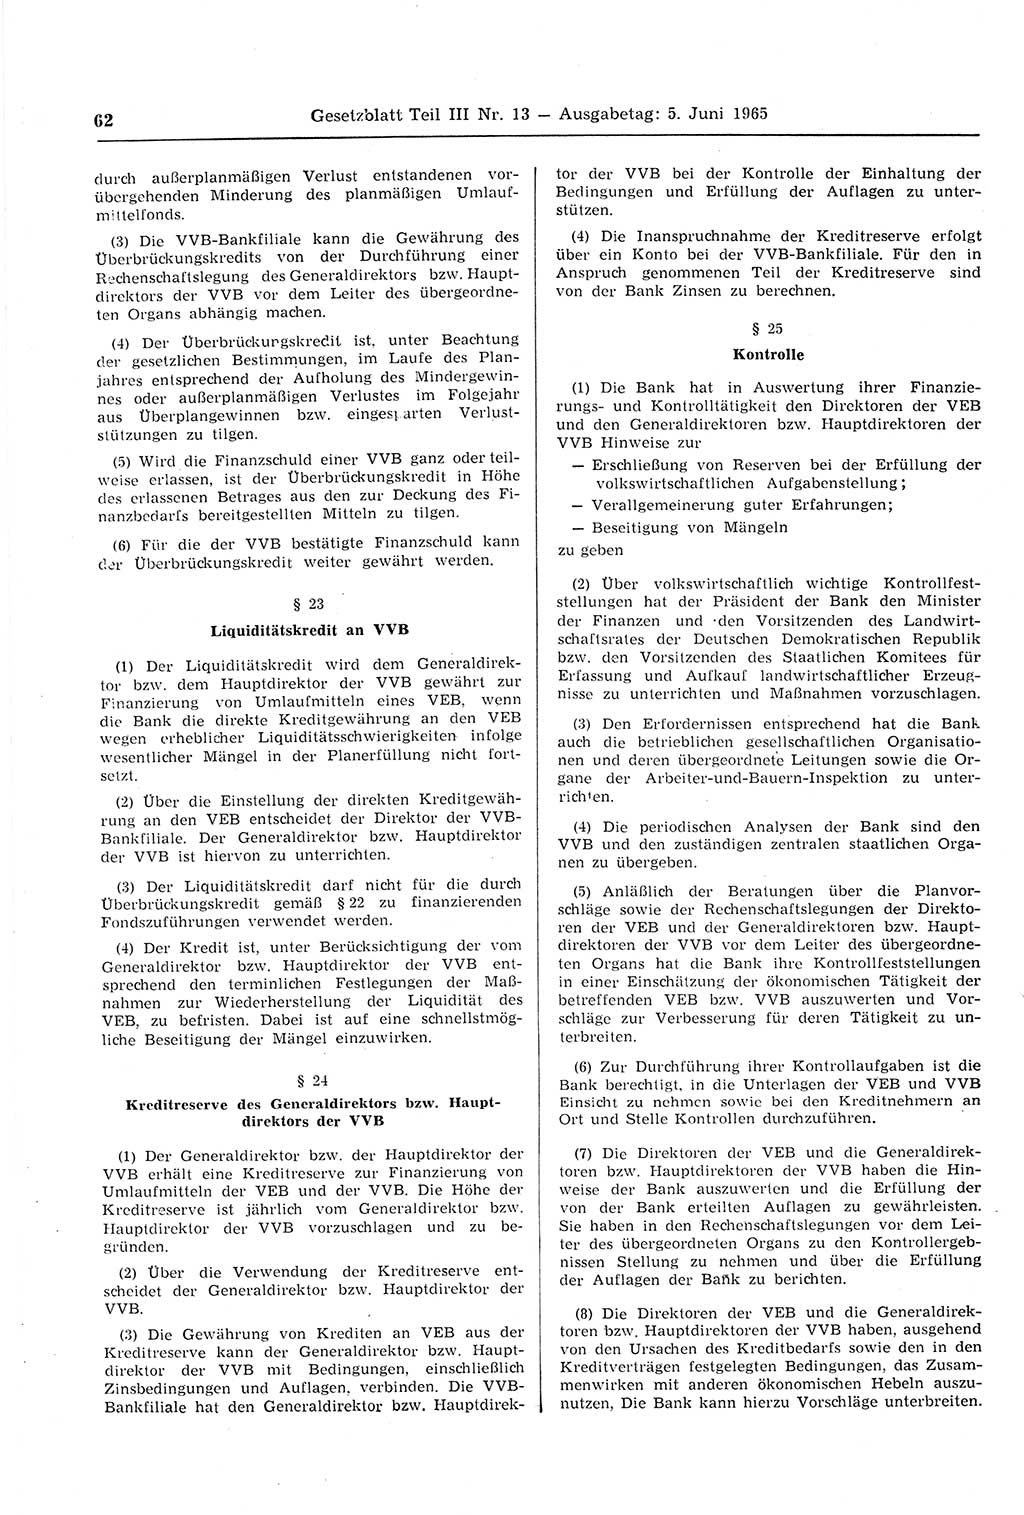 Gesetzblatt (GBl.) der Deutschen Demokratischen Republik (DDR) Teil ⅠⅠⅠ 1965, Seite 62 (GBl. DDR ⅠⅠⅠ 1965, S. 62)